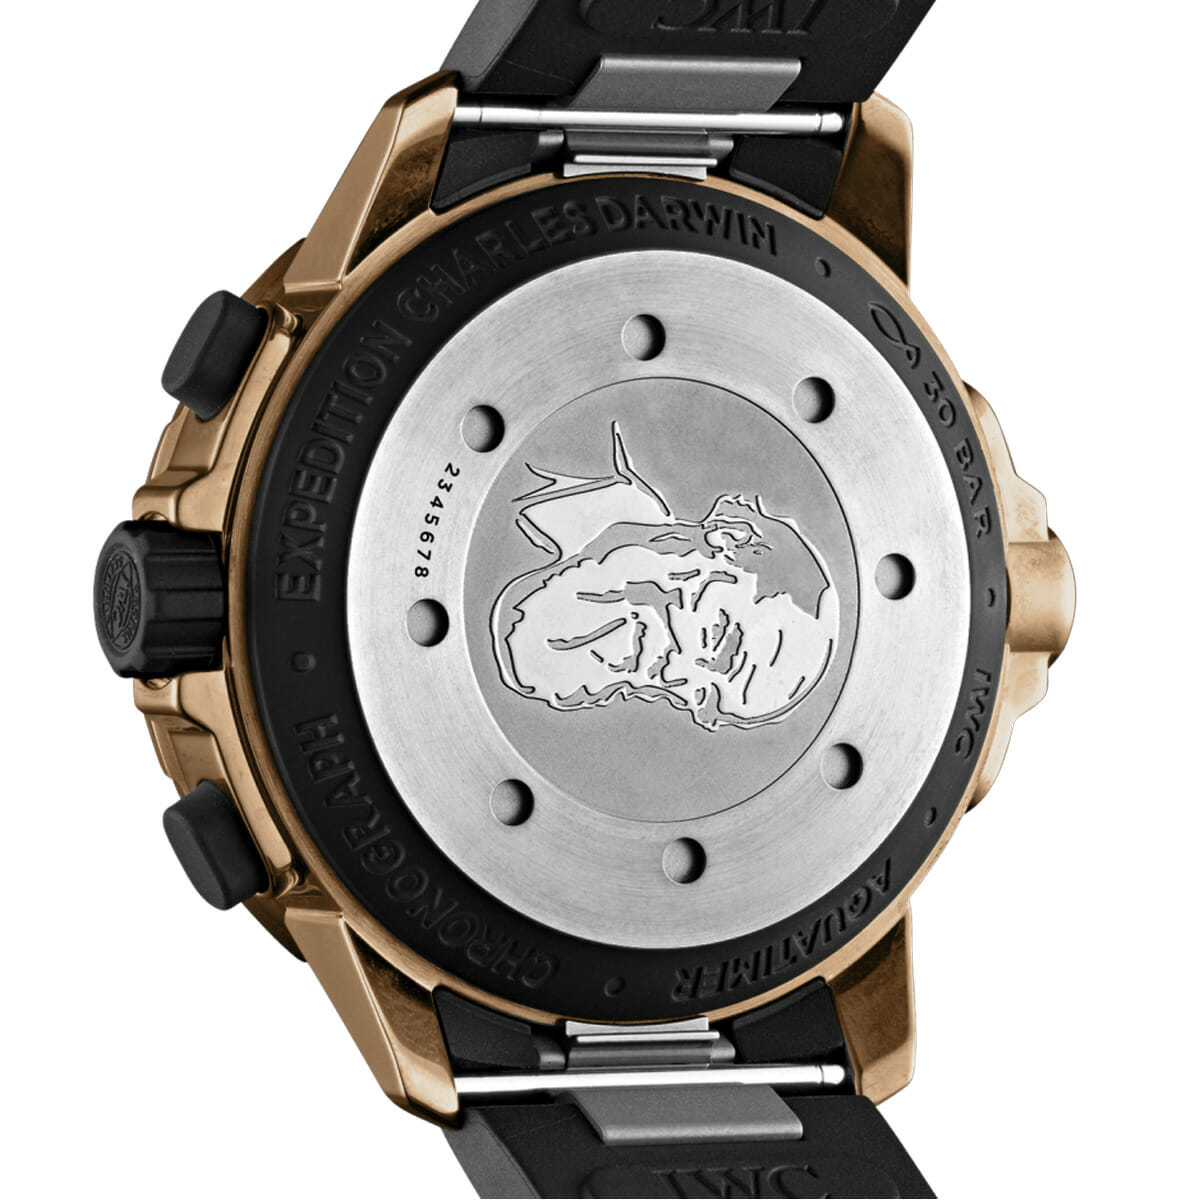 Aquatimer Chronograph Edition “Darwin” 44mm Watch